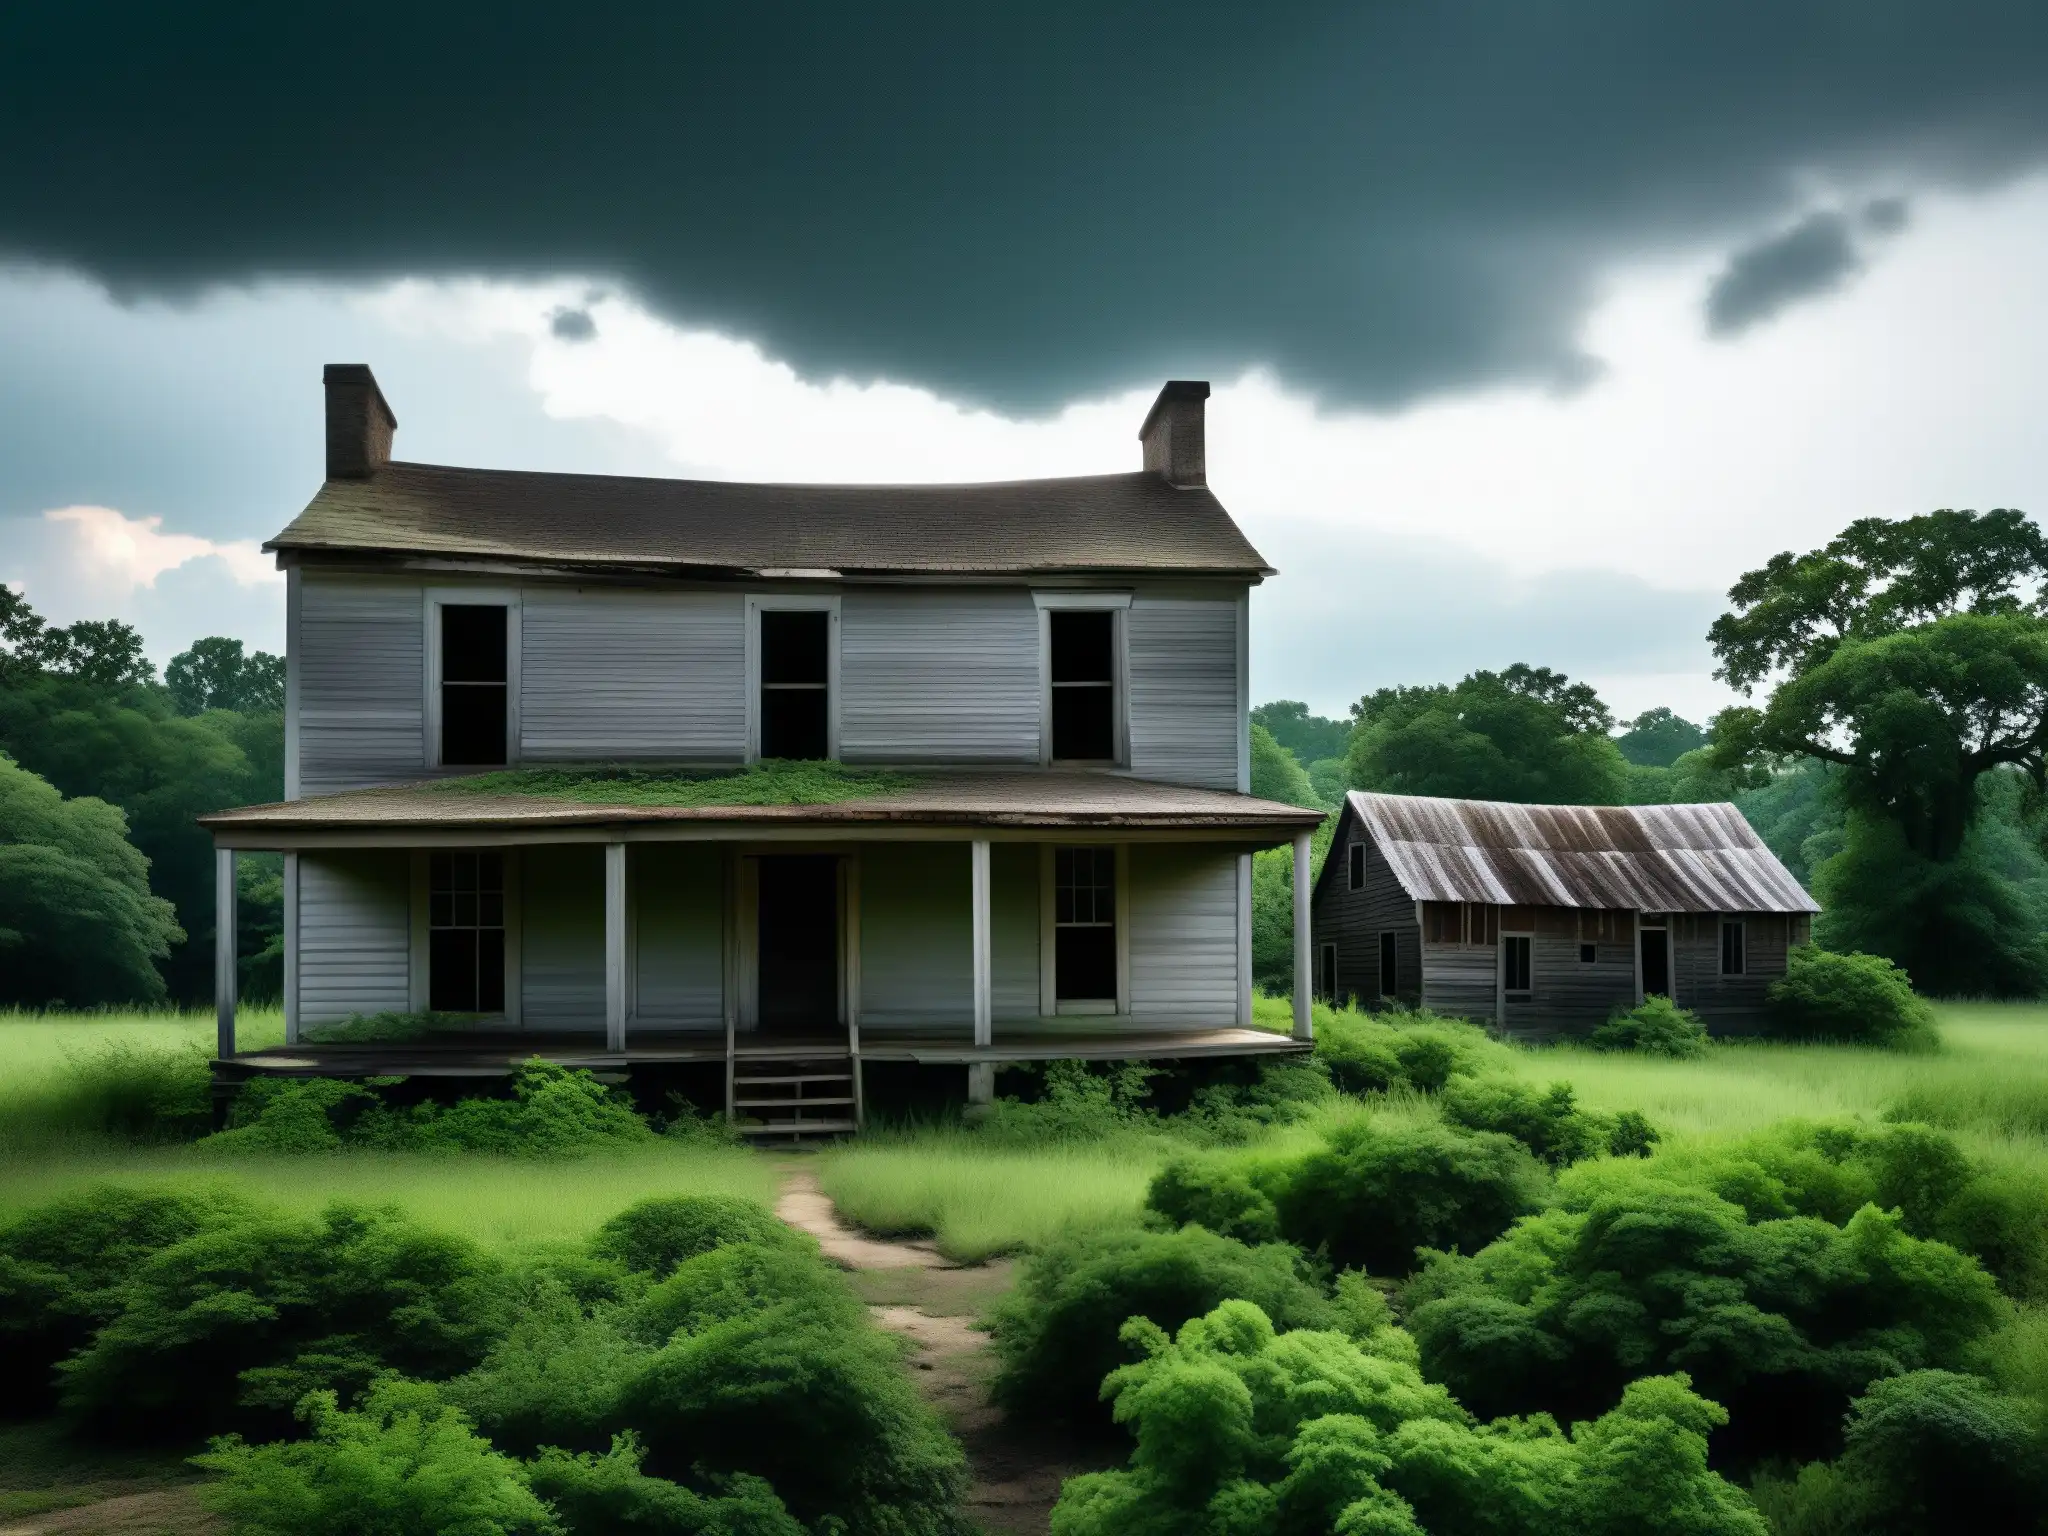 Imagen impactante de la misteriosa desaparición de la colonia Roanoke, con vegetación sobrepasando las estructuras y un aire de misterio